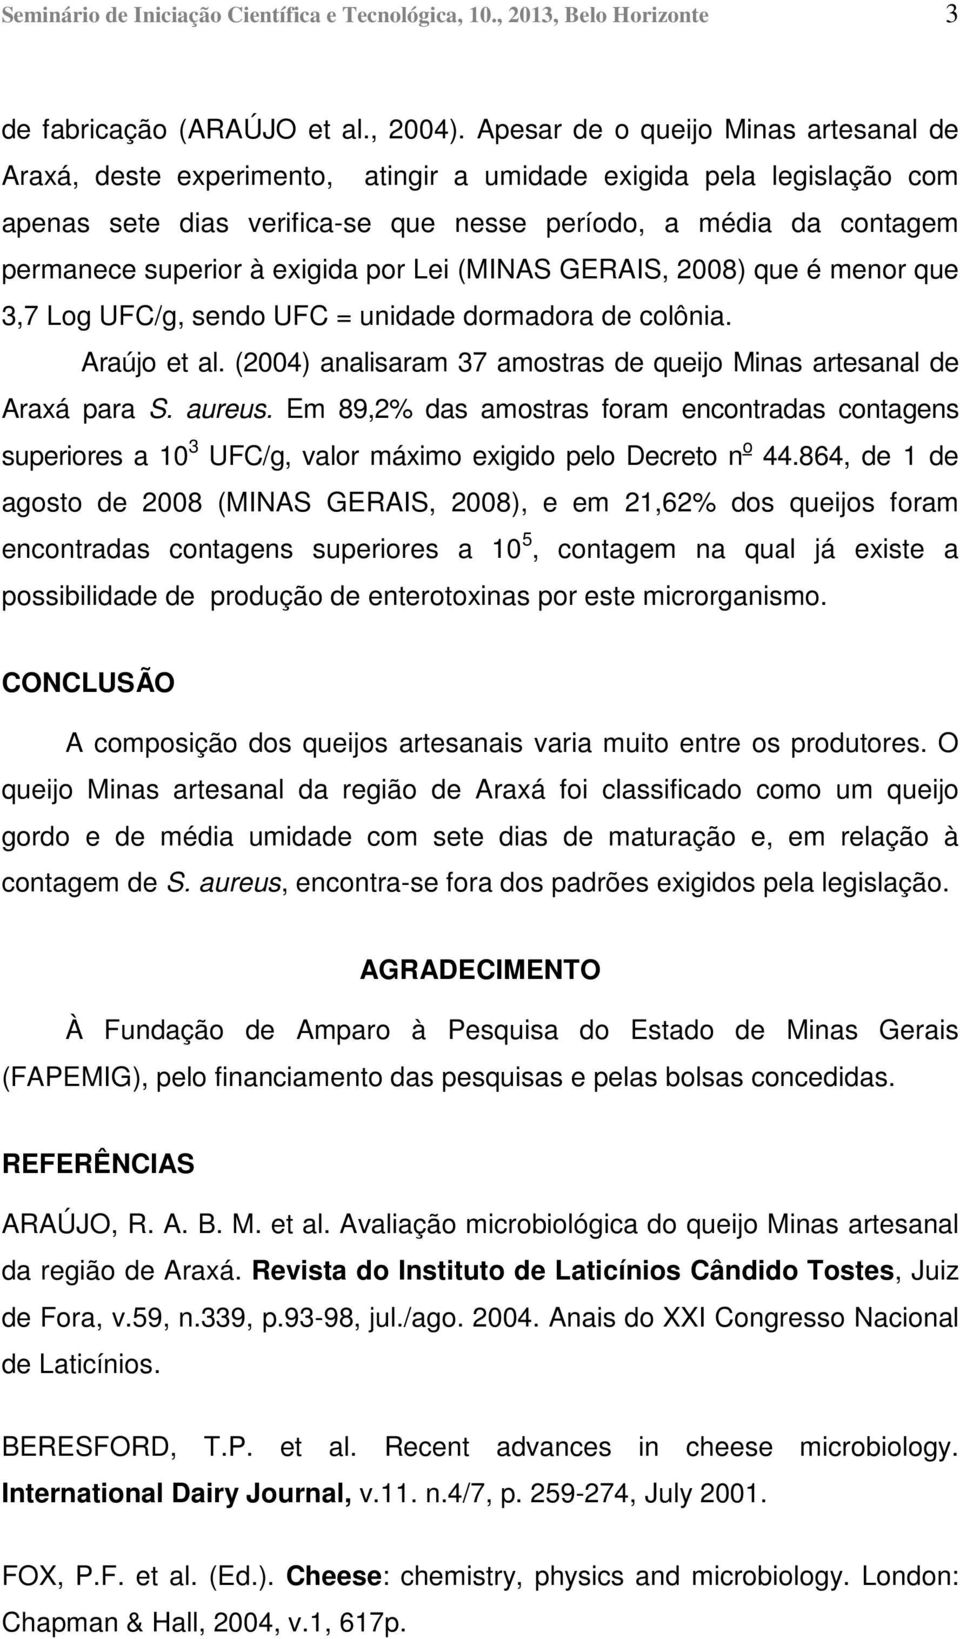 exigida por Lei (MINAS GERAIS, 2008) que é menor que 3,7 Log UFC/g, sendo UFC = unidade dormadora de colônia. Araújo et al. (2004) analisaram 37 amostras de queijo Minas artesanal de Araxá para S.